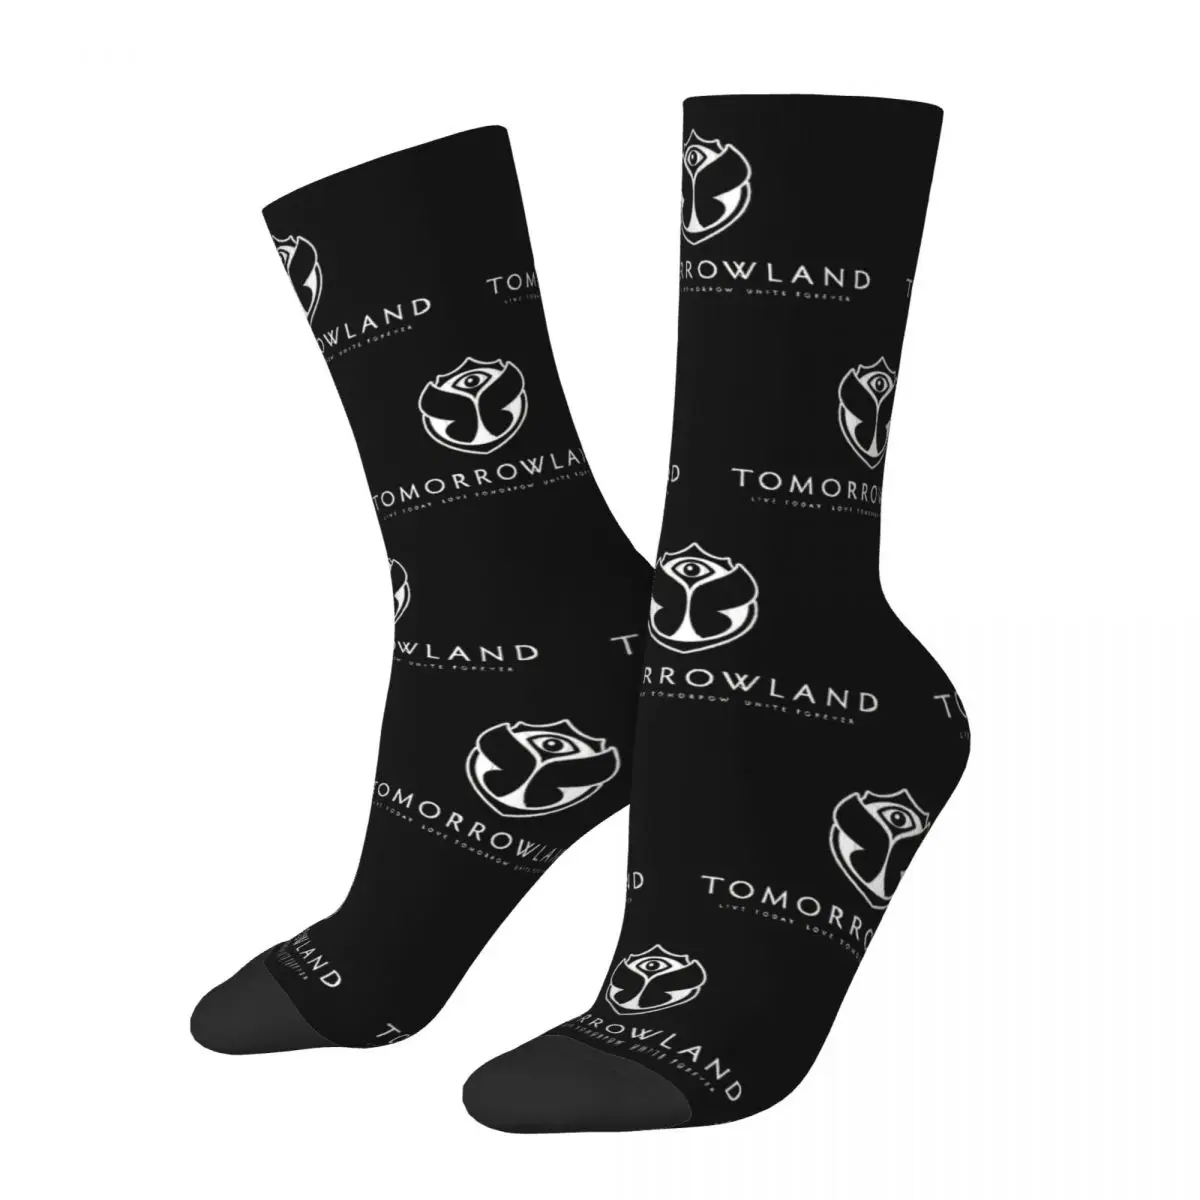 

Геометрические носки Tomorrowlands, удобные электронные чулки для скейтборда, теплые чулки для женщин, идея для подарка на день рождения